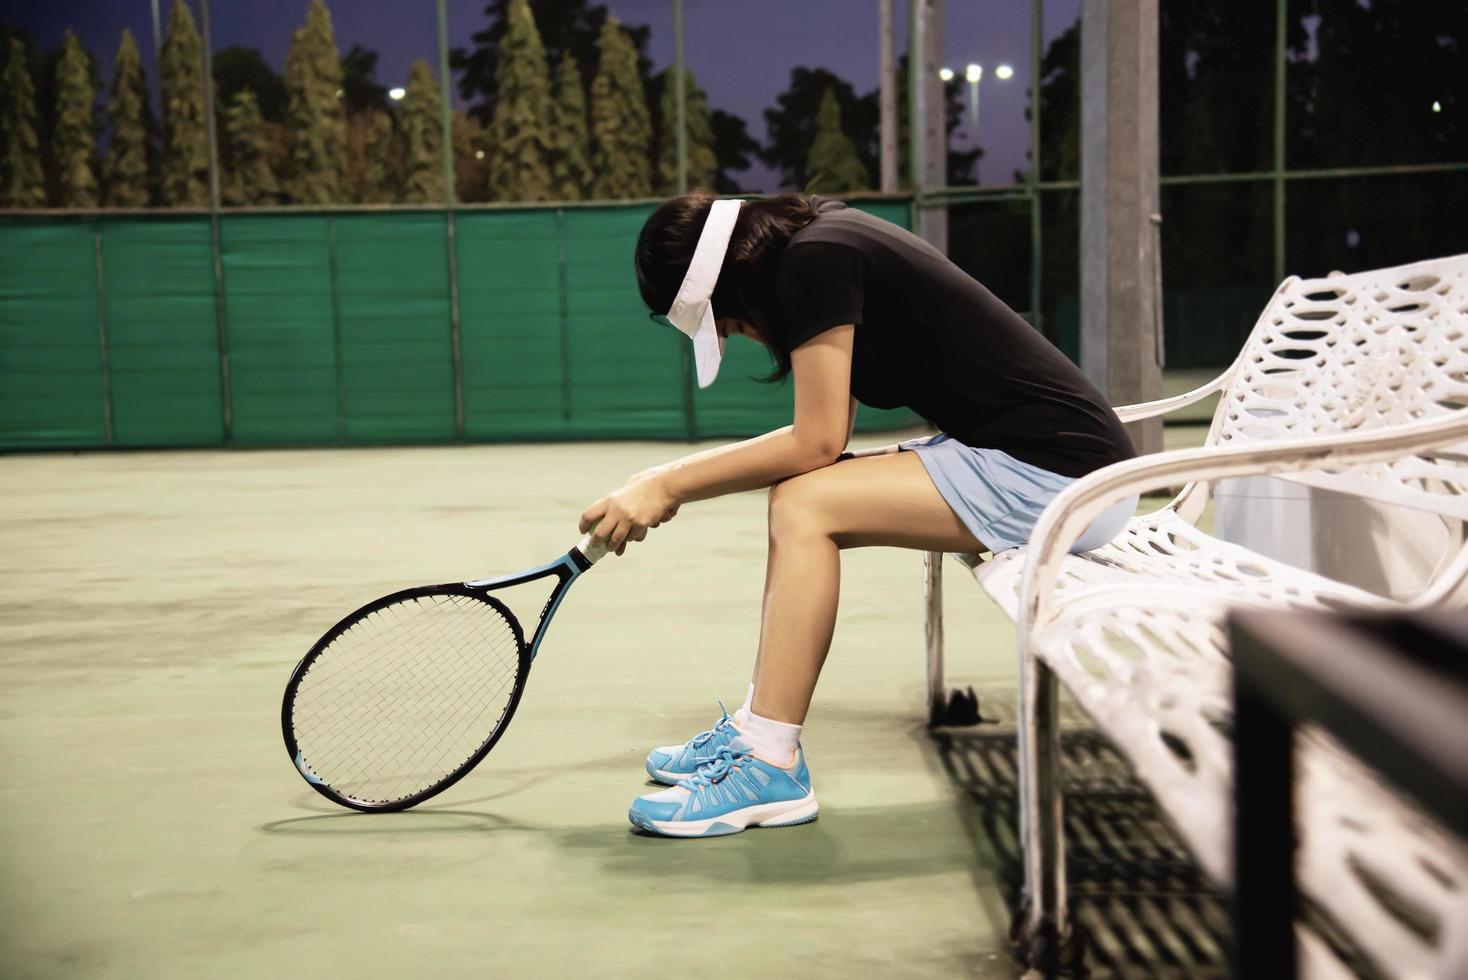 triste dame joueuse de tennis assise dans la cour après avoir perdu un match - personnes dans le concept de jeu de tennis sportif photo